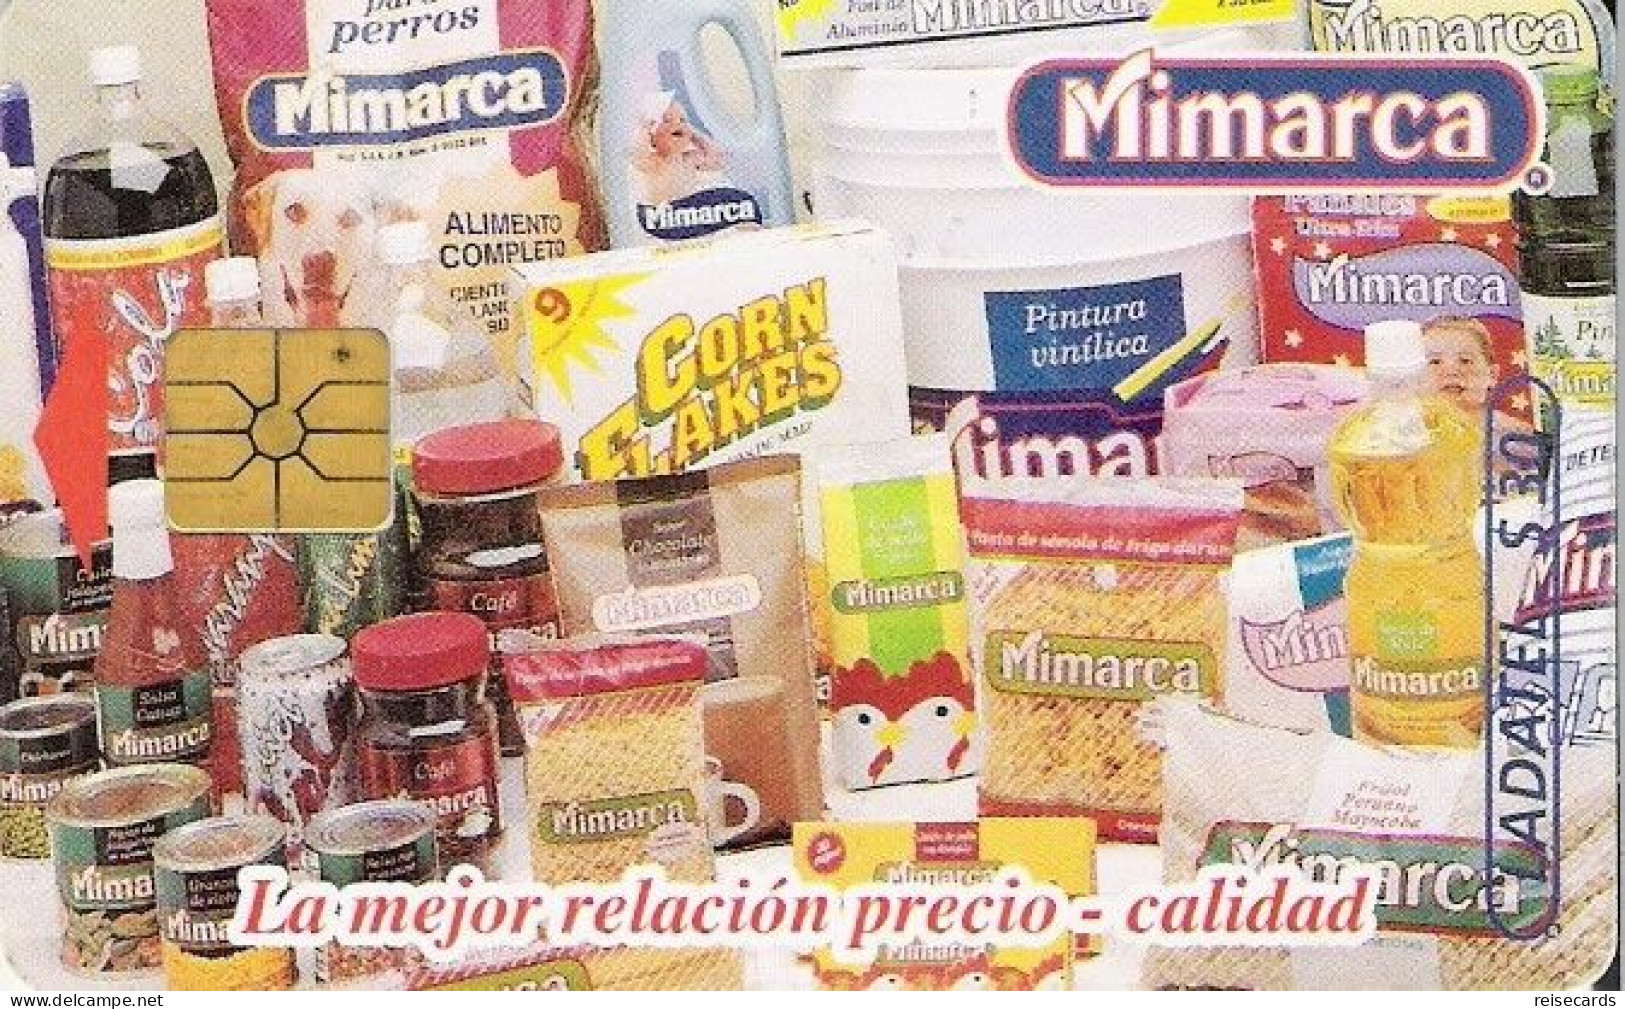 Mexico: Telmex/lLadatel - 1997 Mimarca - Mexico